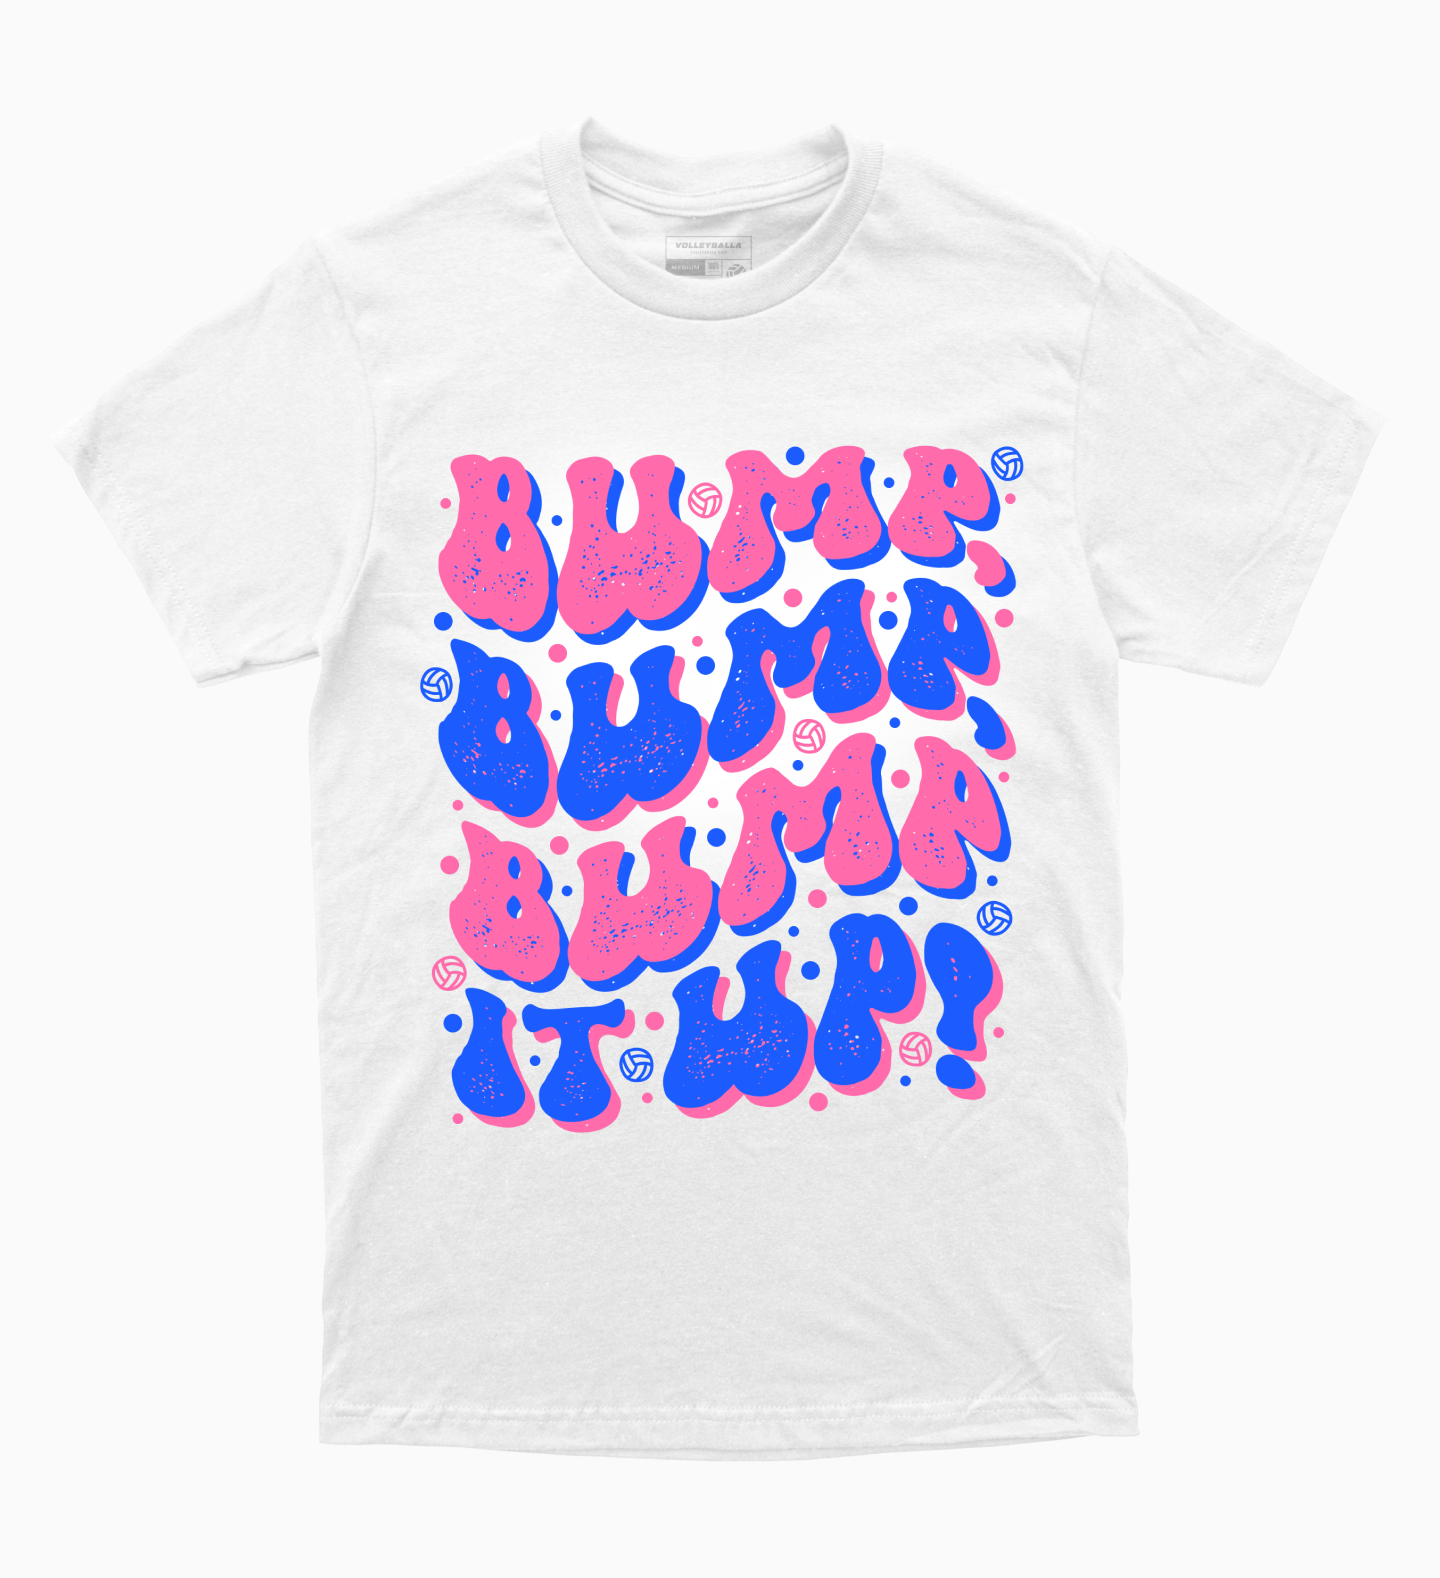 Bump, Bump, Bump It Up Volleyball T-Shirt